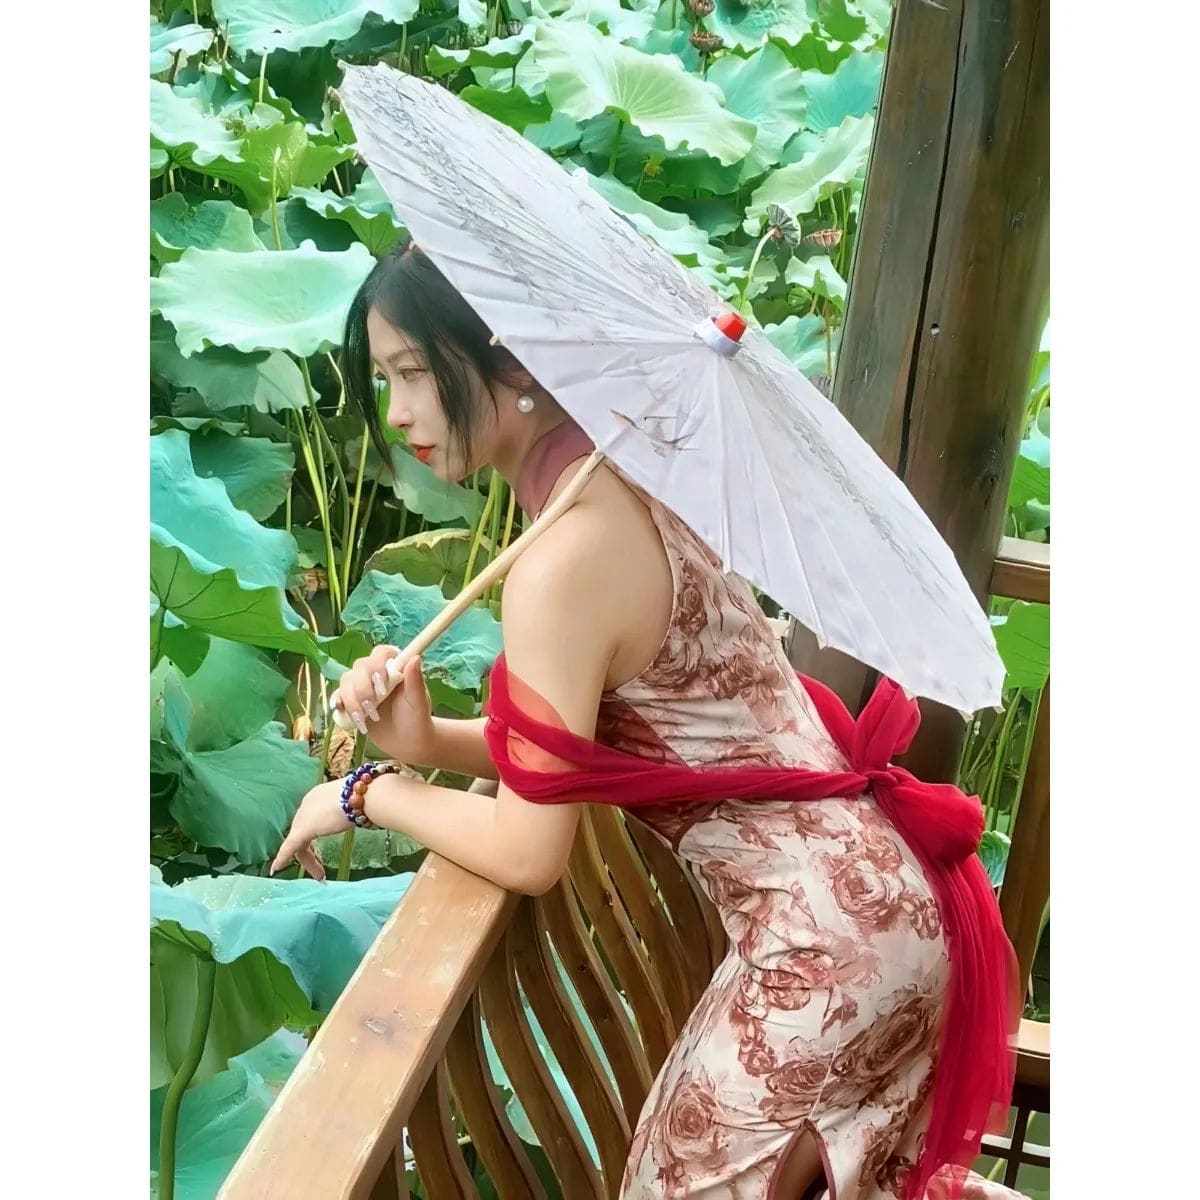 Asiatic Umbrella Traditional